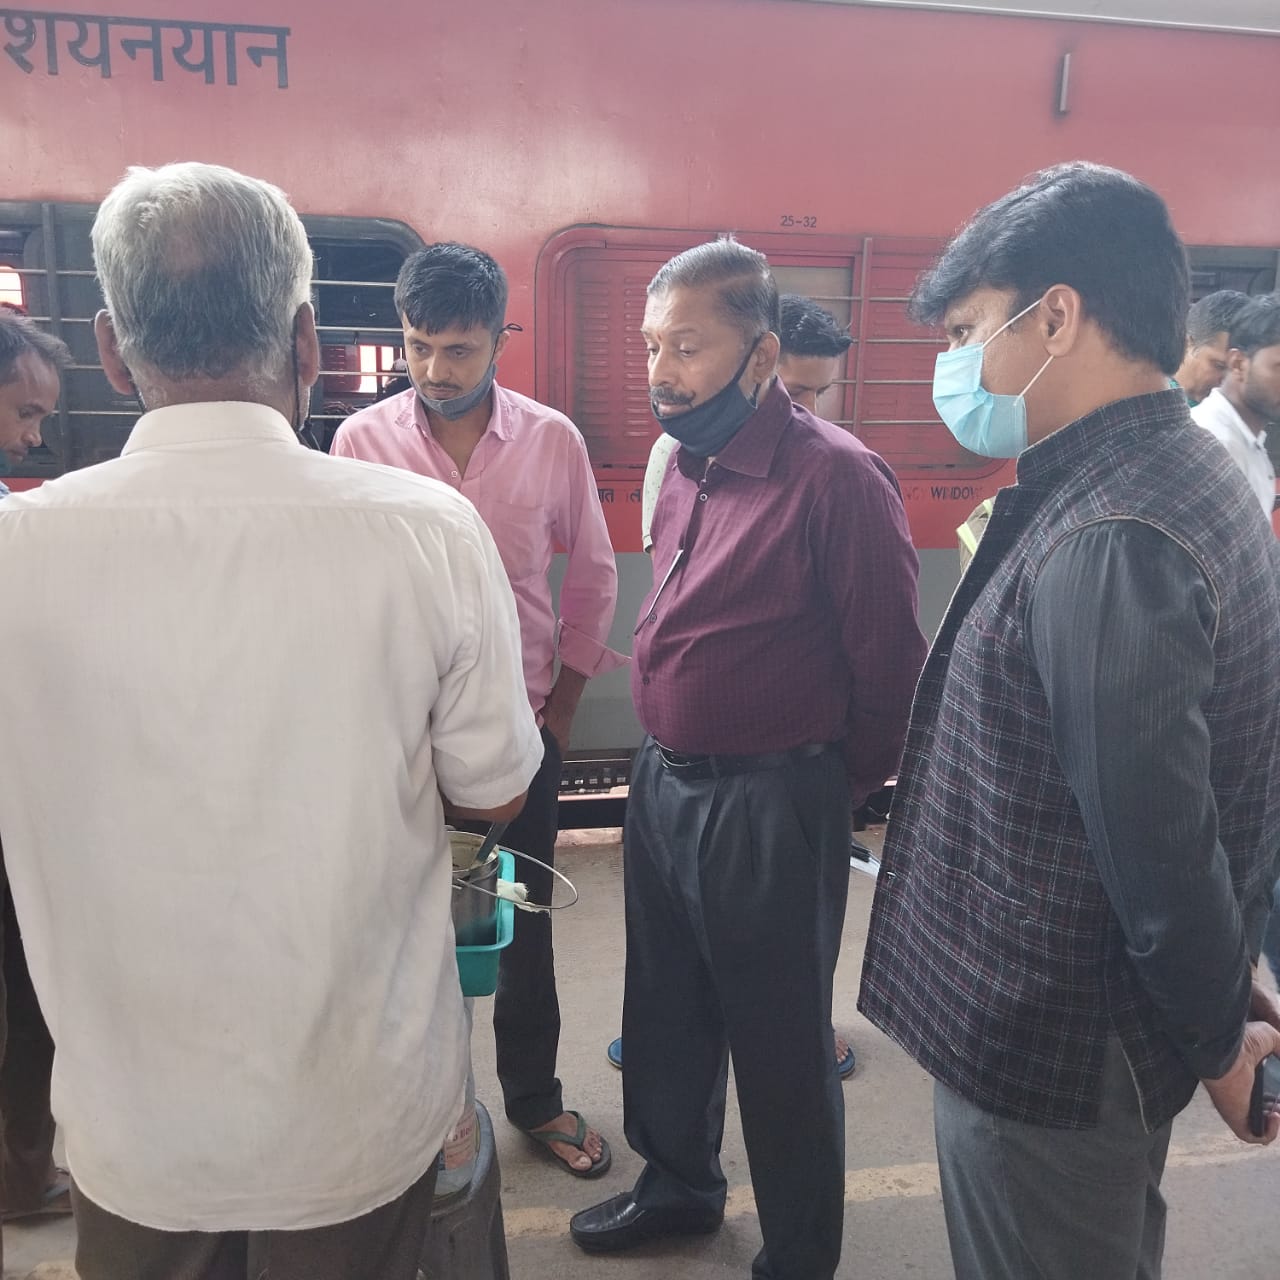 जबलपुर रेल मंडल के सभी स्टेशनों पर खानपान जांच का अभियान जारी